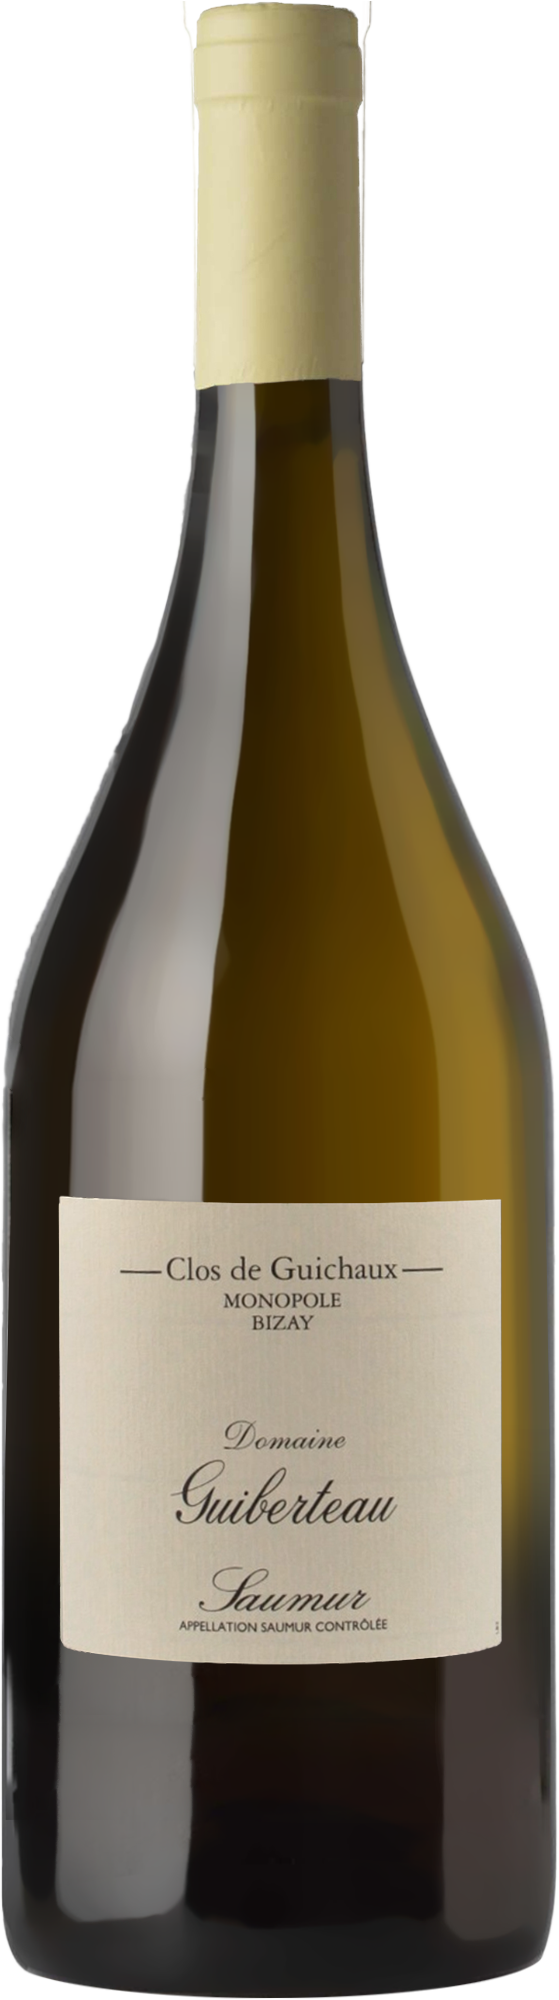 Domaine Guiberteau Saumur Clos de Guichaux Blanc 2017 (1500ml)